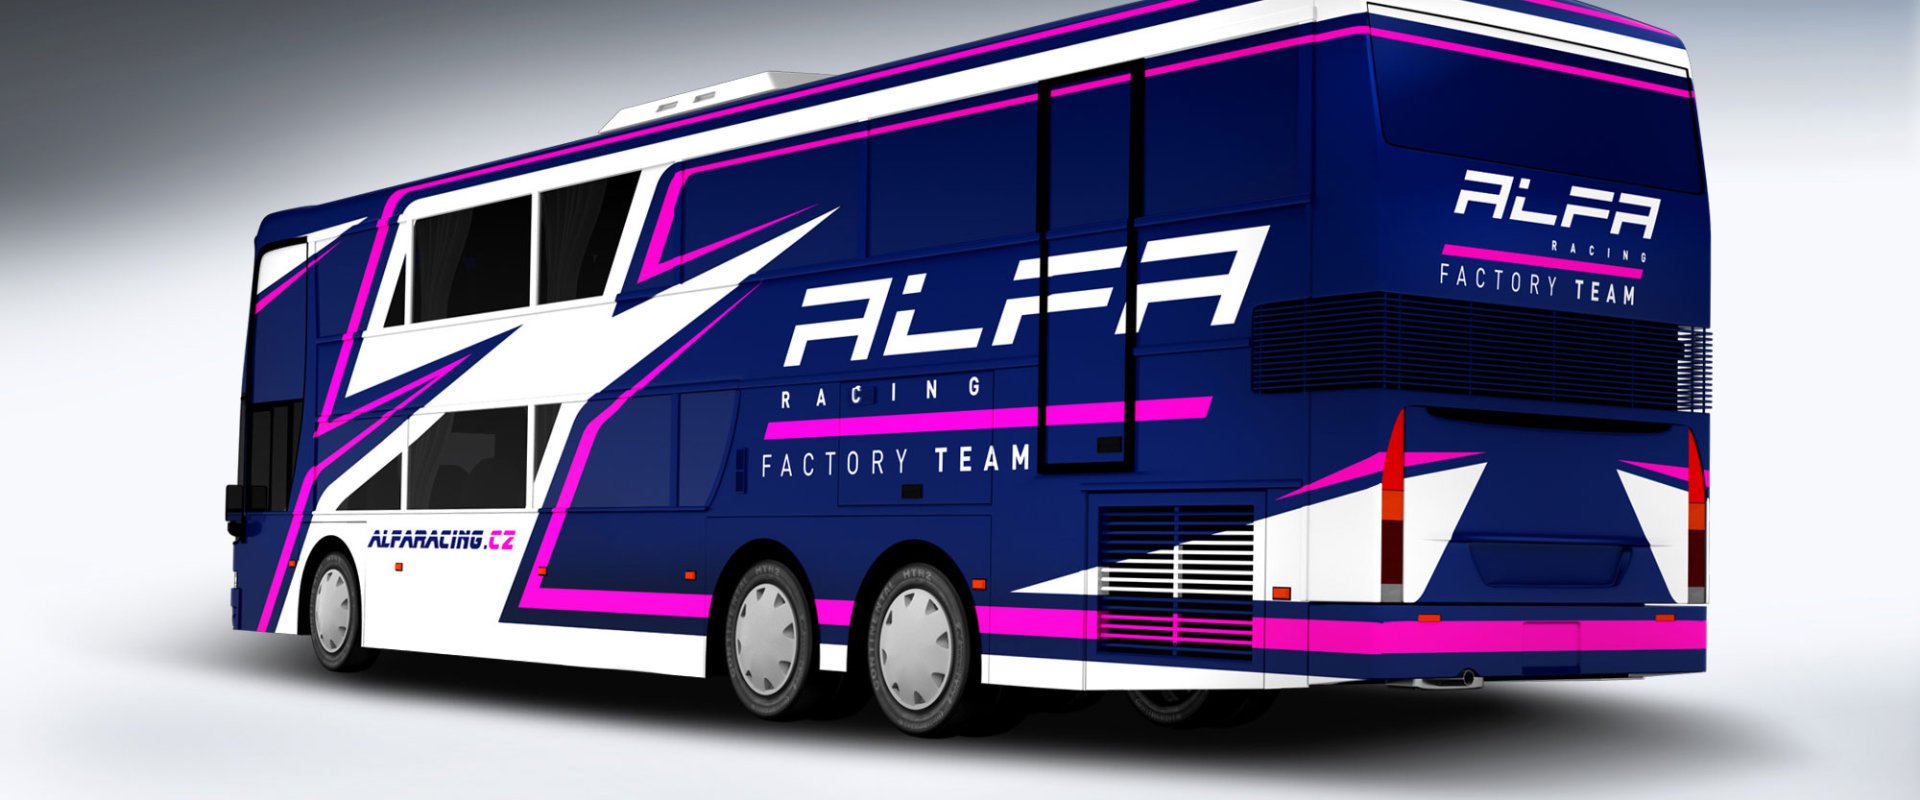 Alfa Racing #3